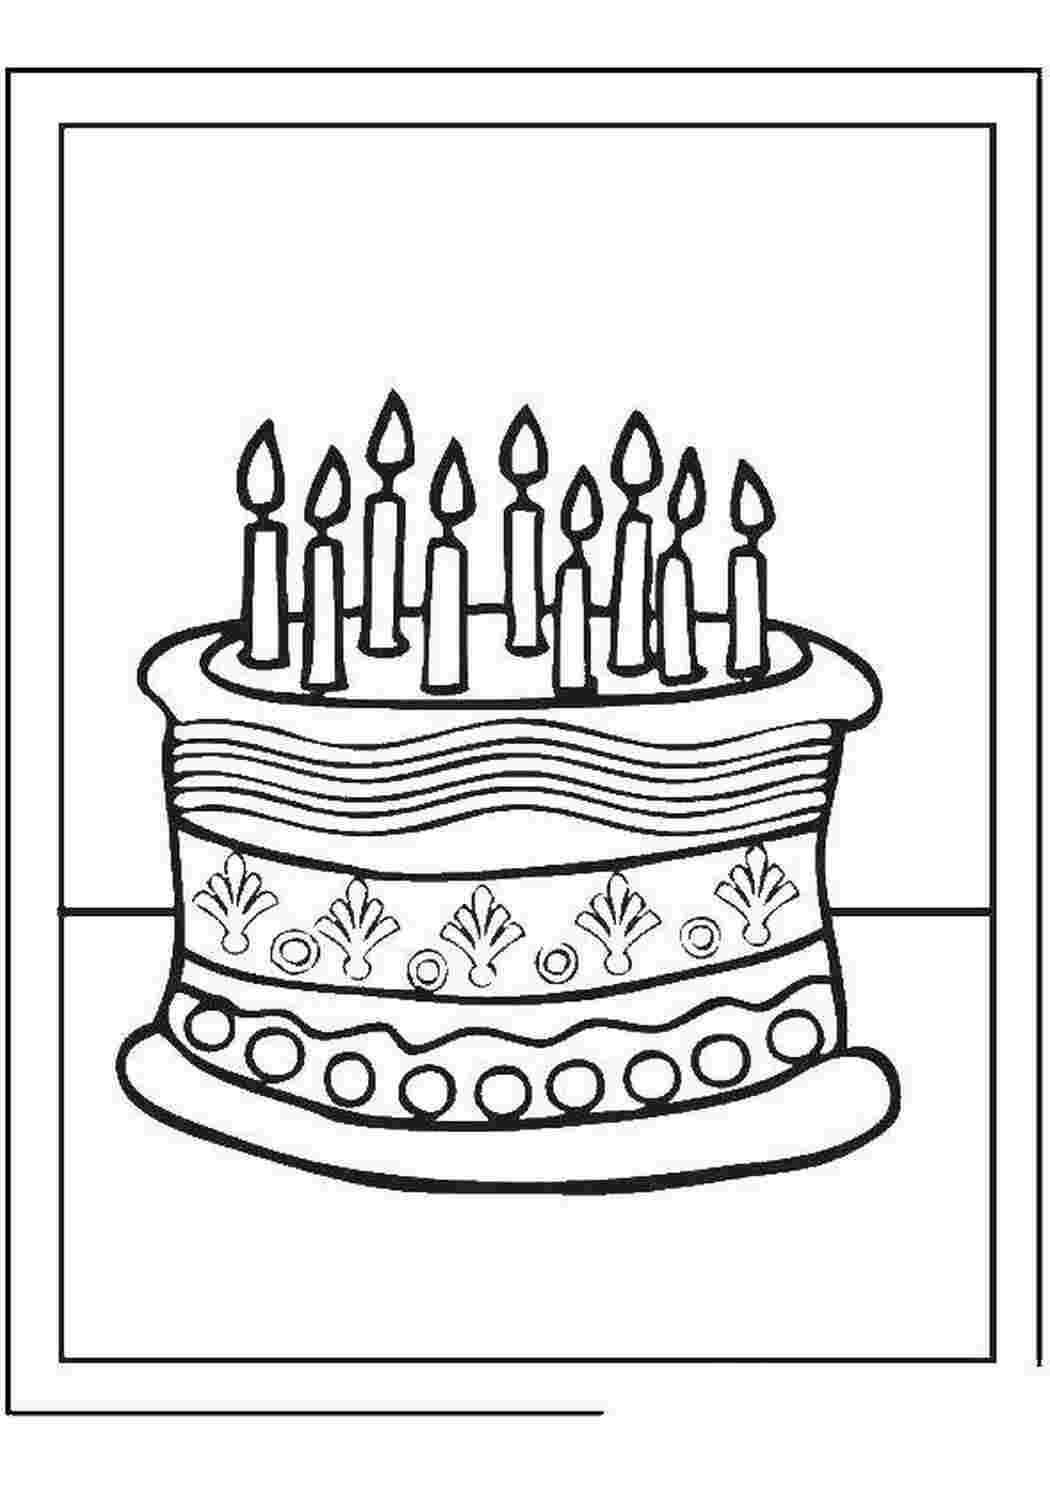 Торт со свечками для раскрашивания